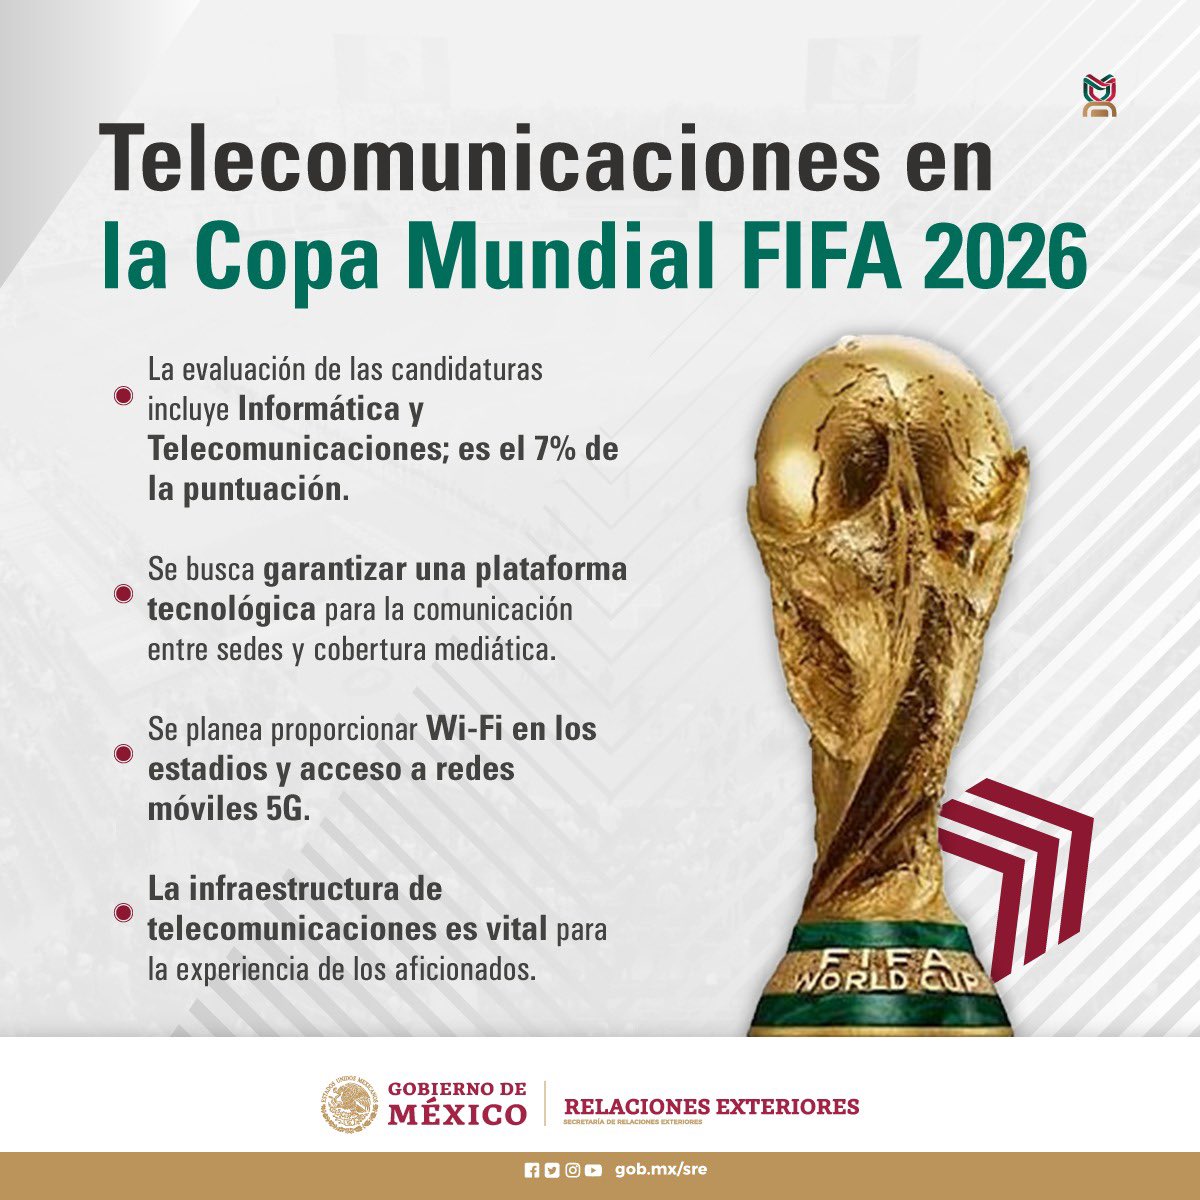 🔺En conmemoración del Día Mundial de las Telecomunicaciones y de la Sociedad de la Información, Javier Juárez Mojica, Comisionado del Instituto Federal de Telecomunicaciones, destaca la importancia de este sector para la Copa Mundial FIFA 2026.